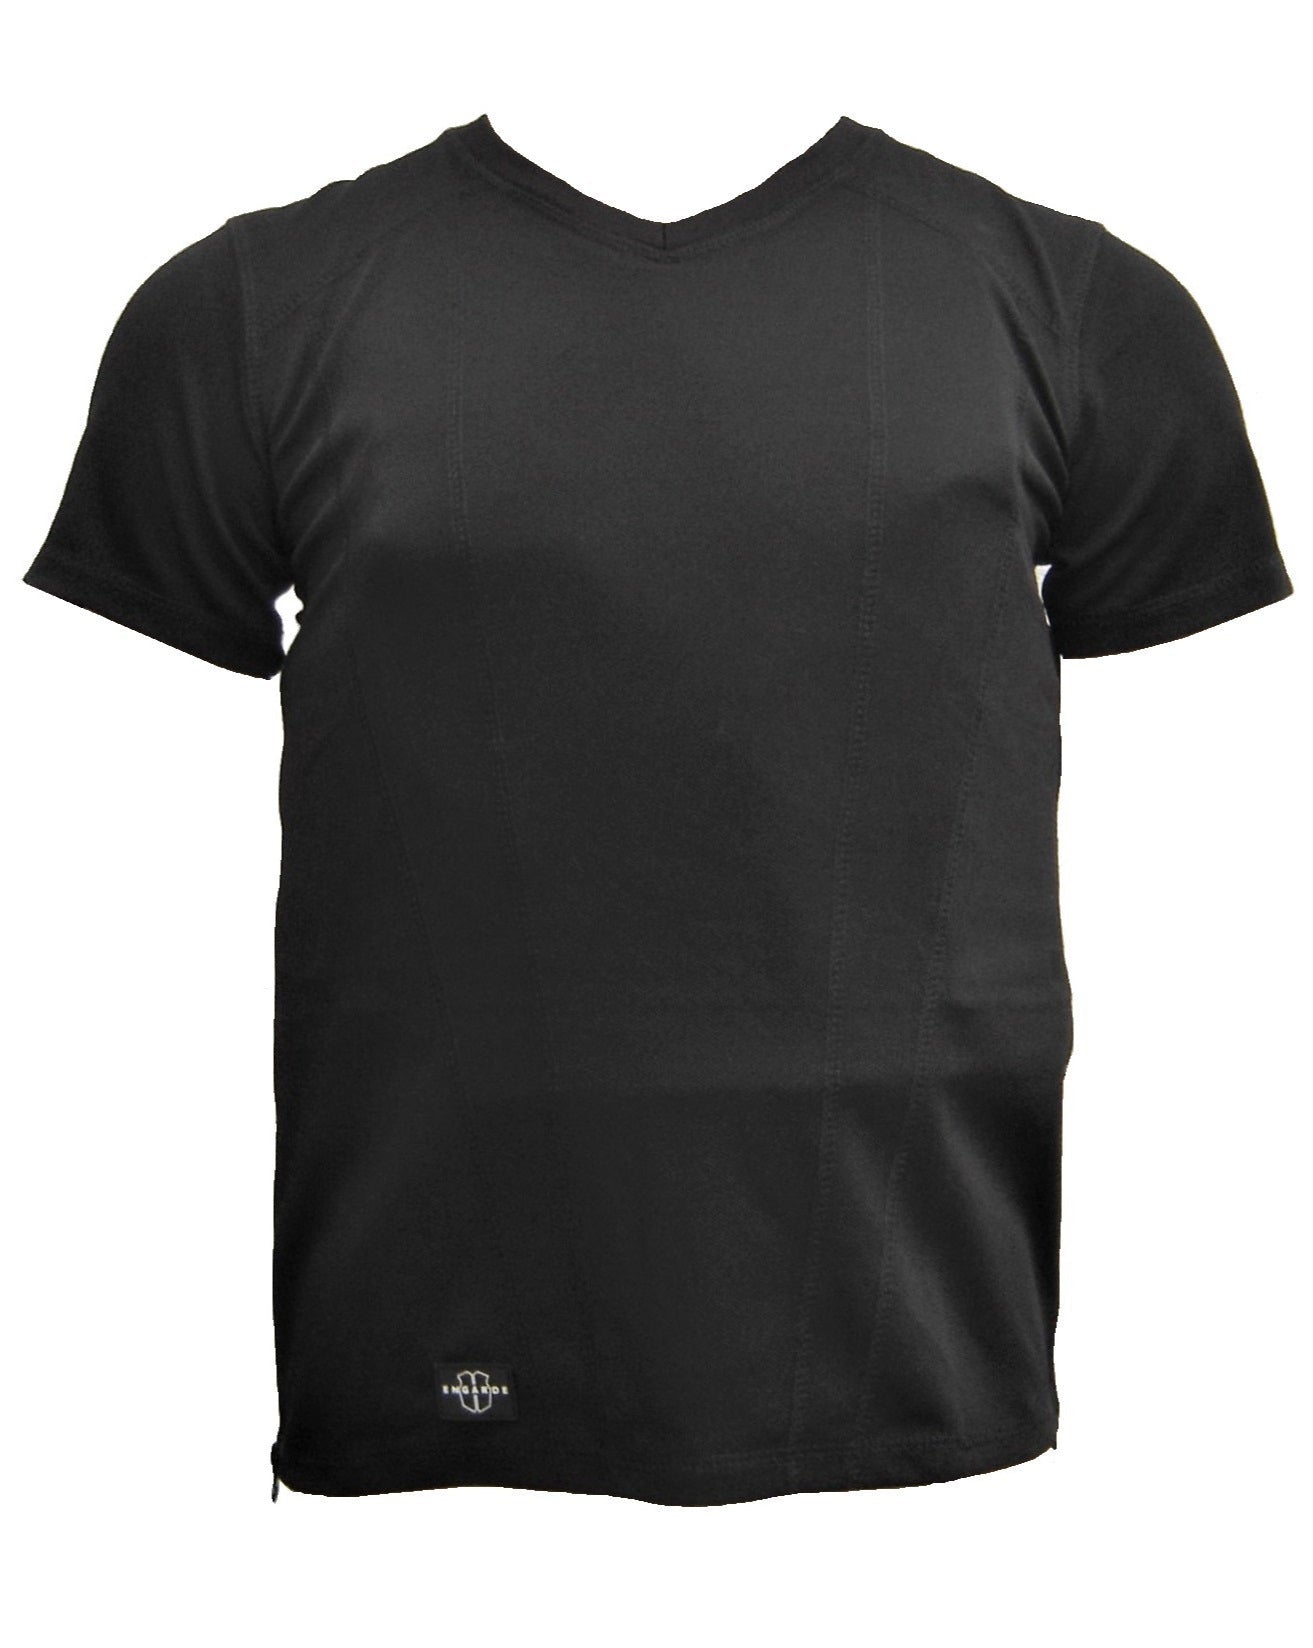 Kogelvrij t-shirt Engarde kogelwerend NIJ 2 COMFORT discrete vest zwart